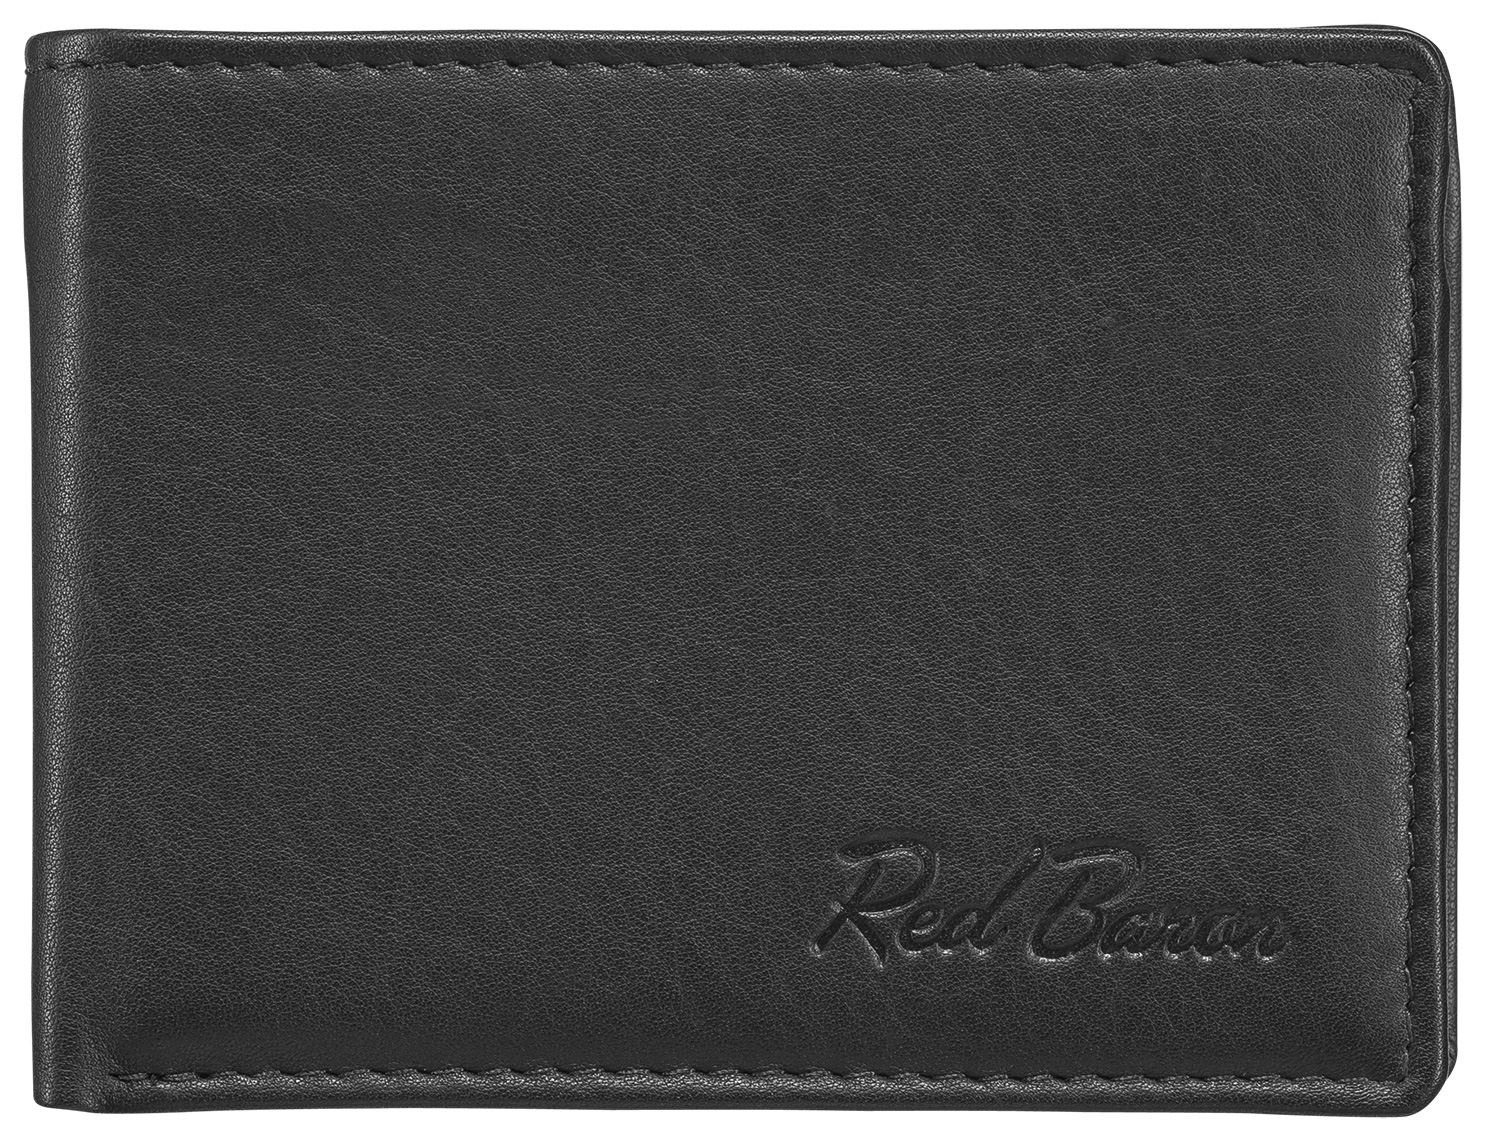 Red Baron Geldbörse RB-WT-001-01, 1-fach klappbar, Kreditkartenfächer, Münzfach mit Druckknopf